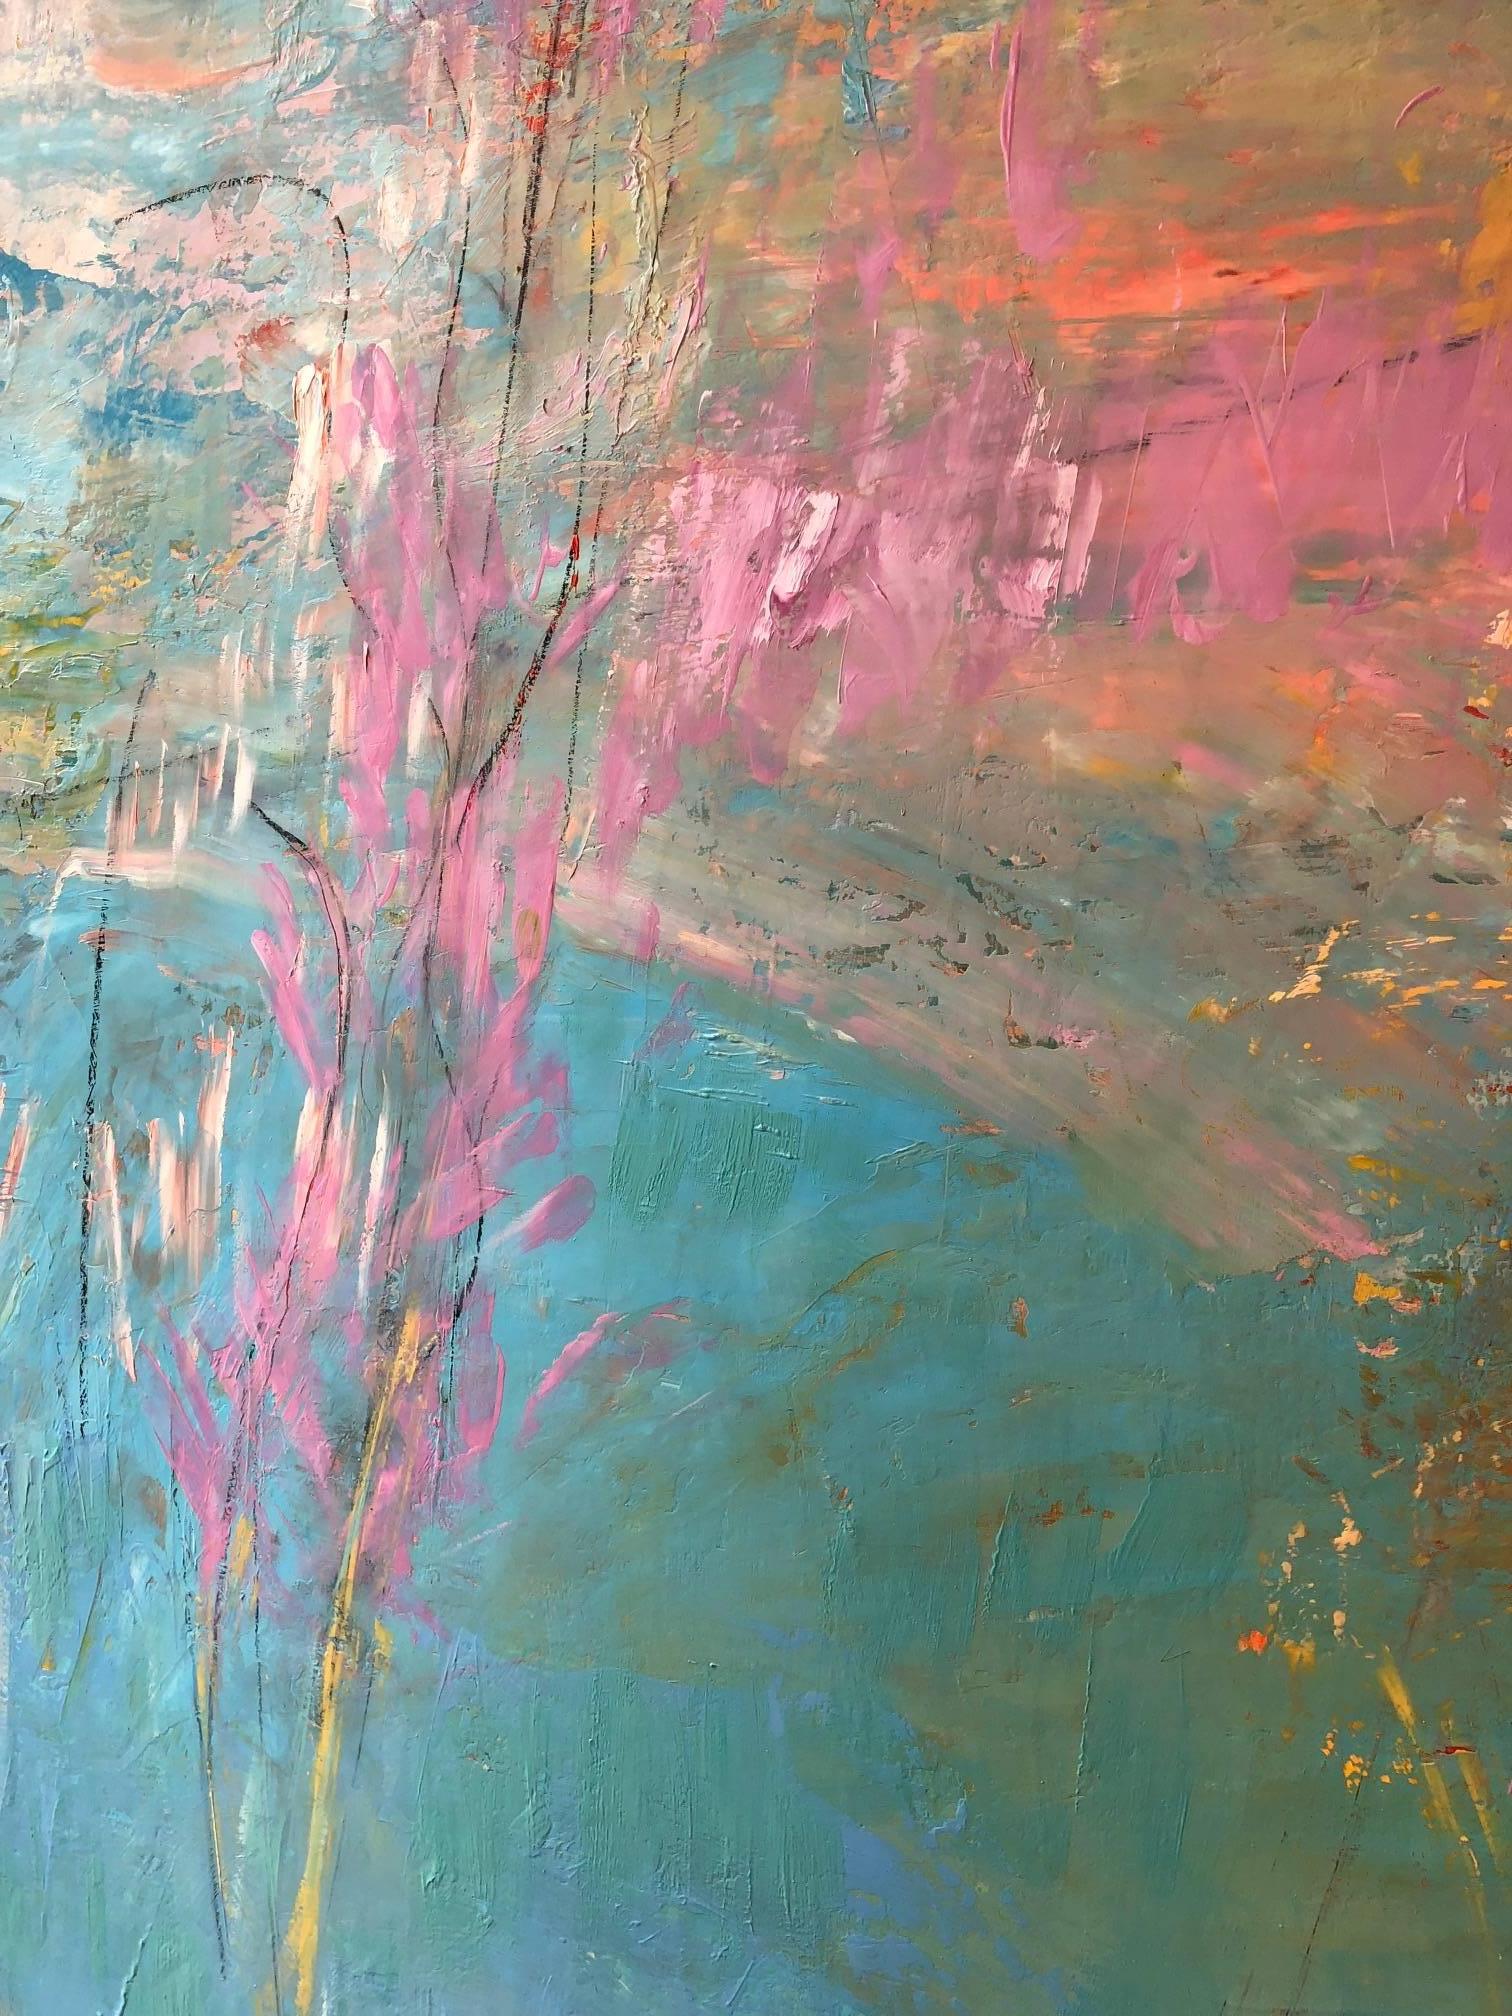 La lumière bleu-vert de la mer danse sur le rose et le jaune avec le rouge dans cette peinture à l'huile sur toile de Stephen Henriques de 62 1/4 x 58 3/4 pouces, vibrante et vivante avec des lignes et des couleurs rythmées, qui dit, 